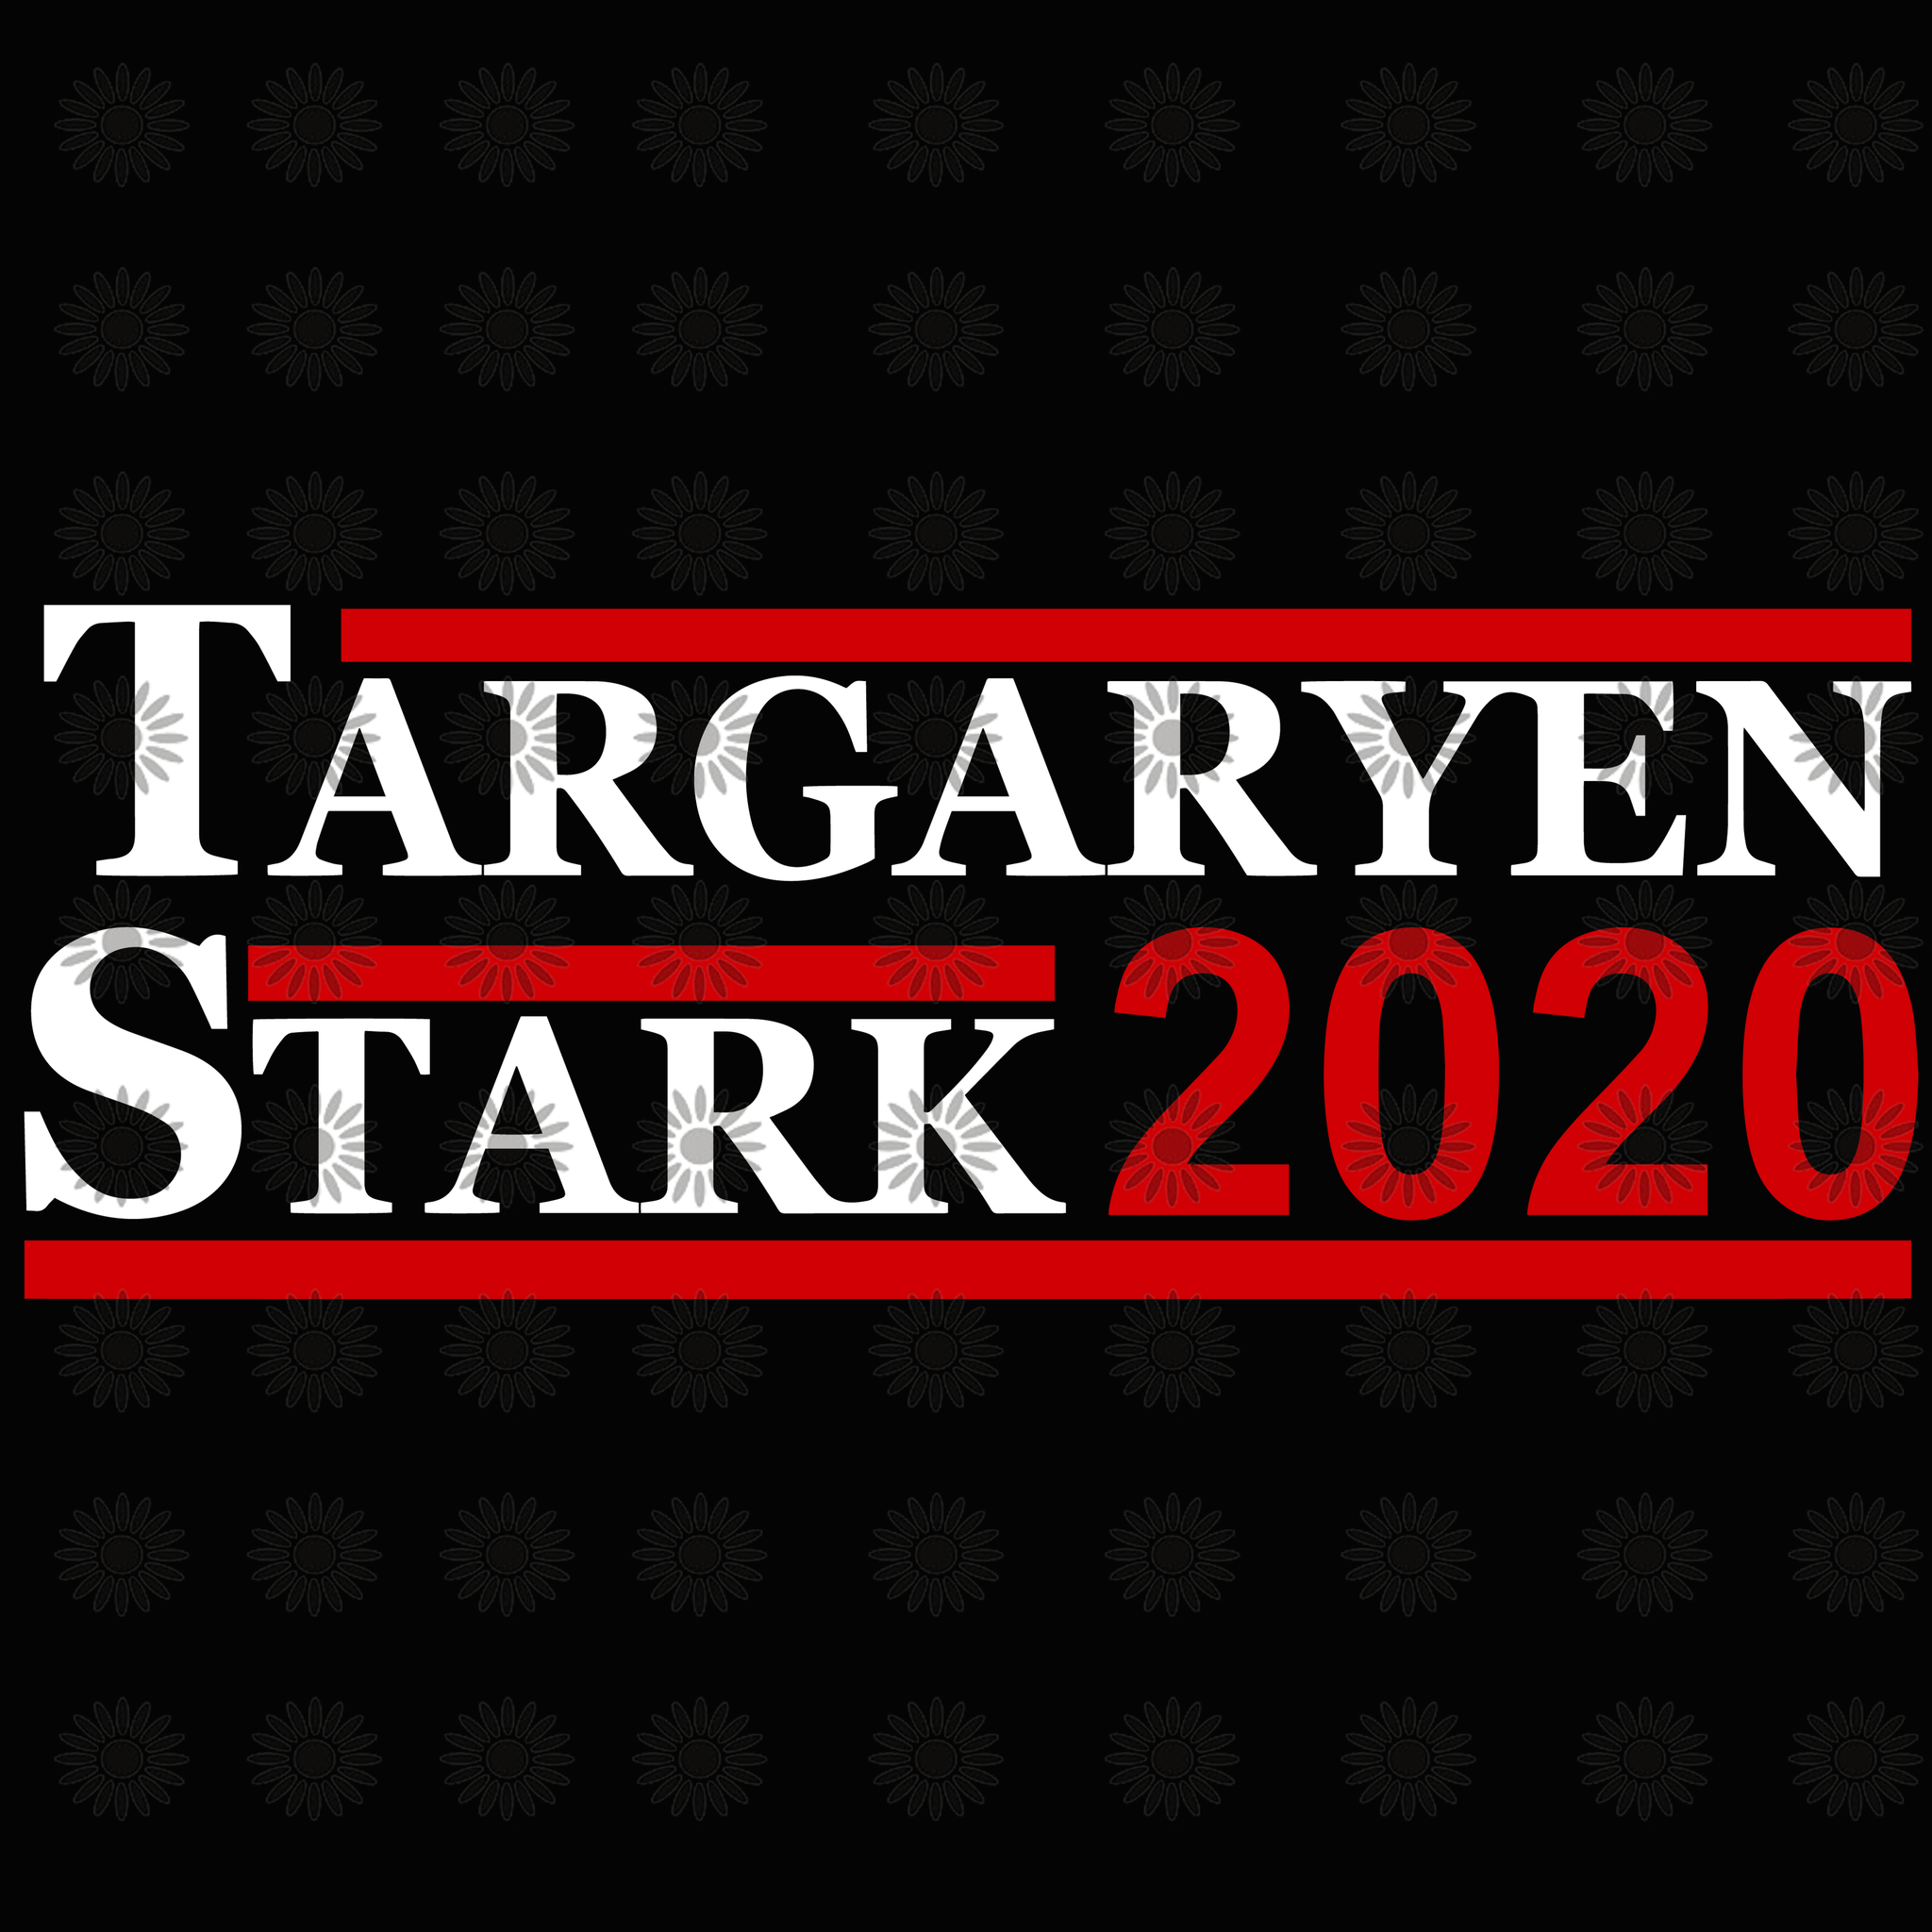 Targaryen stark 2020 svg, Targaryen stark 2020, funny quotes svg, eps, dxf, png file